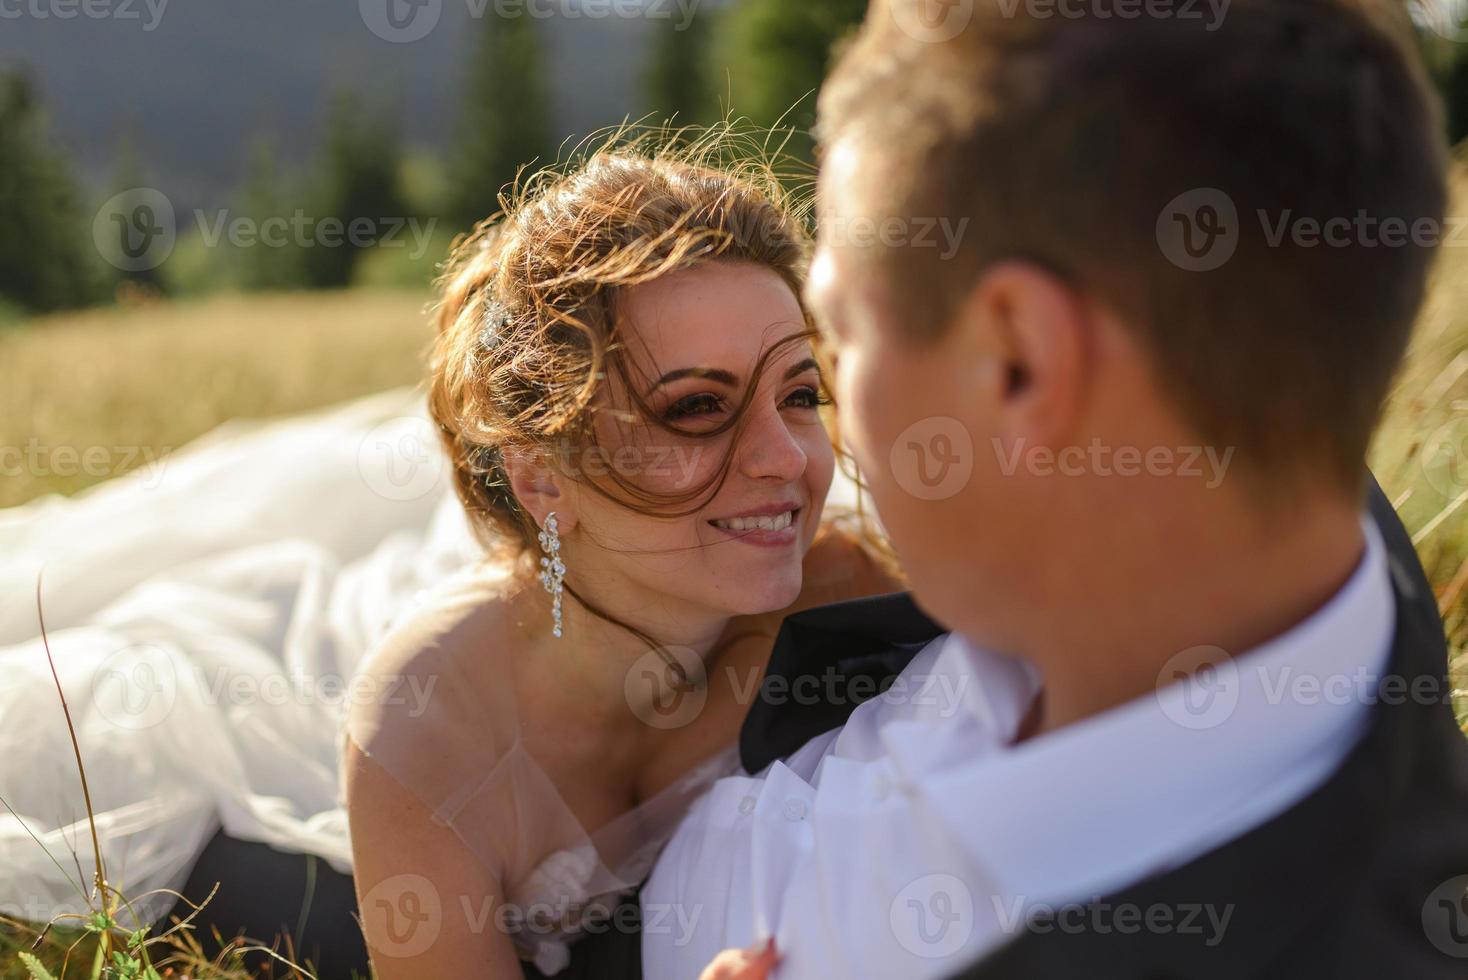 bröllopsfotografering i bergen. brudparet kramas hårt. foto